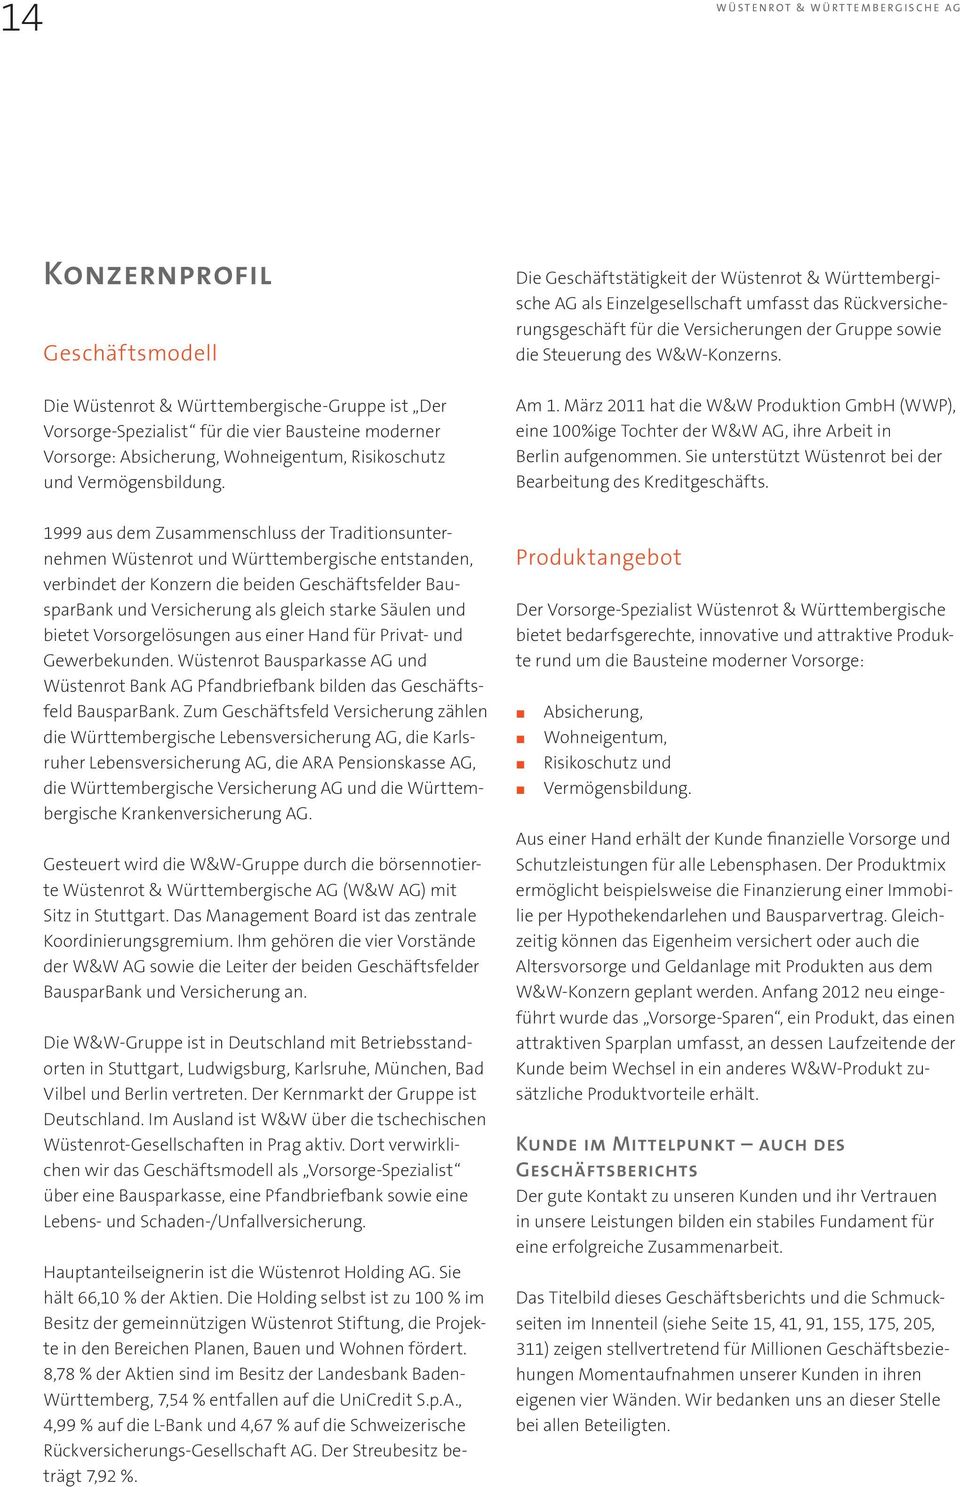 Die Wüstenrot & Württembergische-Gruppe ist Der Vorsorge-Spezialist für die vier Bausteine moderner Vorsorge: Absicherung, Wohneigentum, Risikoschutz und Vermögensbildung. Am 1.